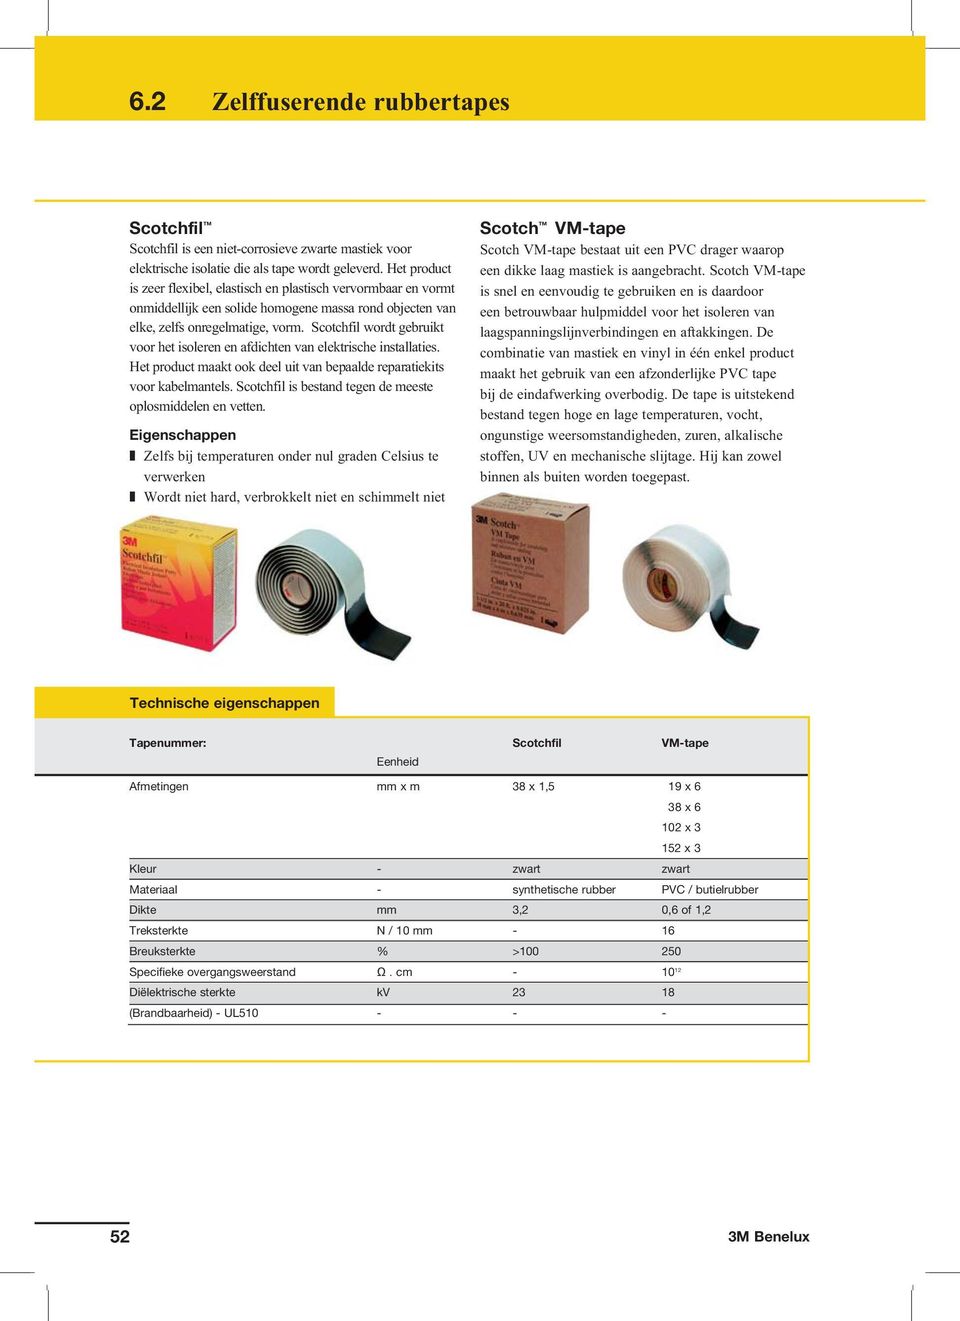 Scotchfil wordt gebruikt voor het isoleren en afdichten van elektrische installaties. Het product maakt ook deel uit van bepaalde reparatiekits voor kabelmantels.